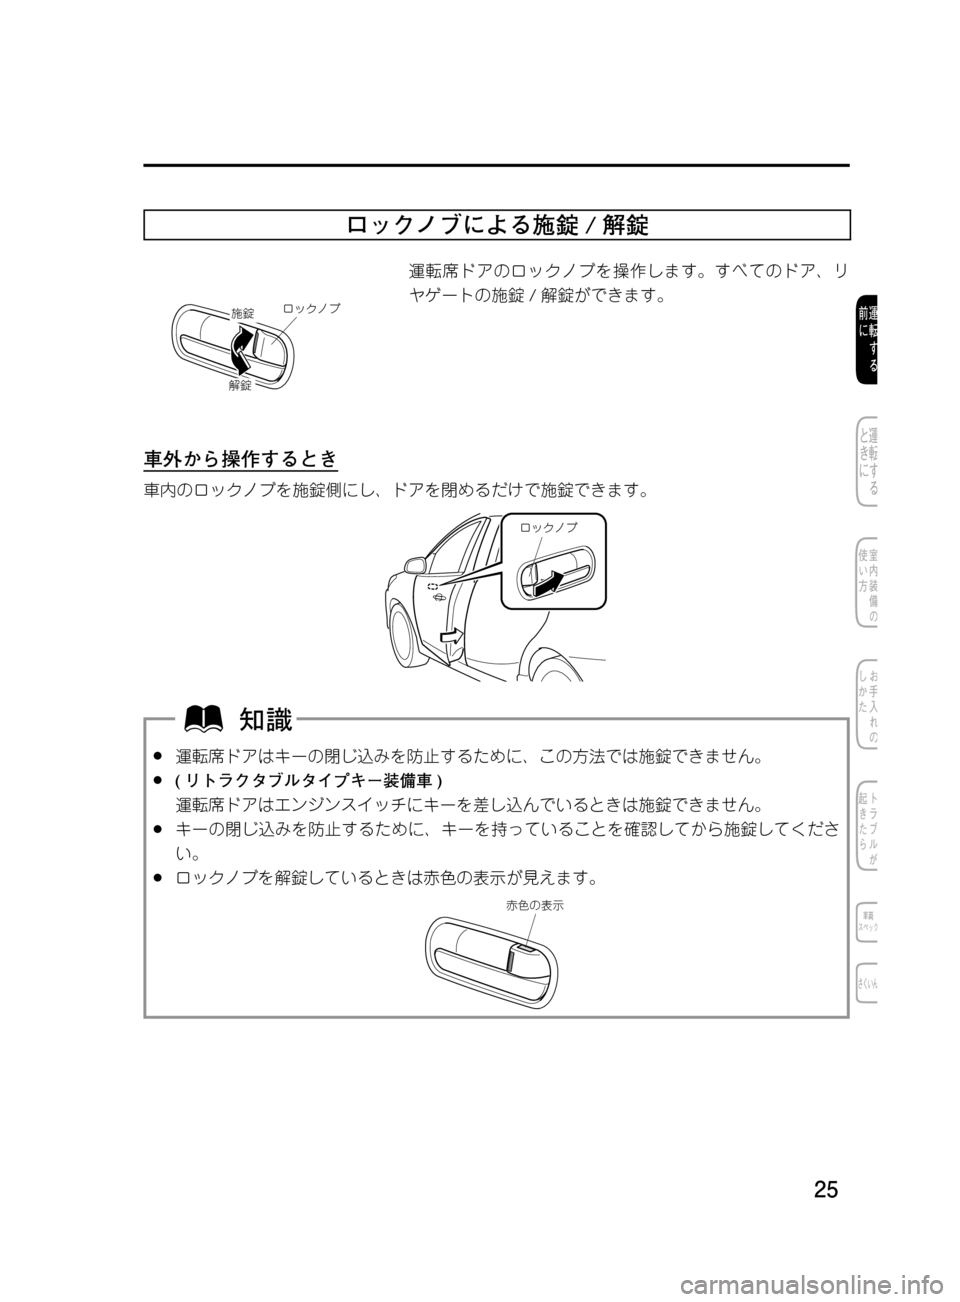 MAZDA MODEL DEMIO 2011  デミオ｜取扱説明書 (in Japanese) ��
��P�S�N��/�P���% 